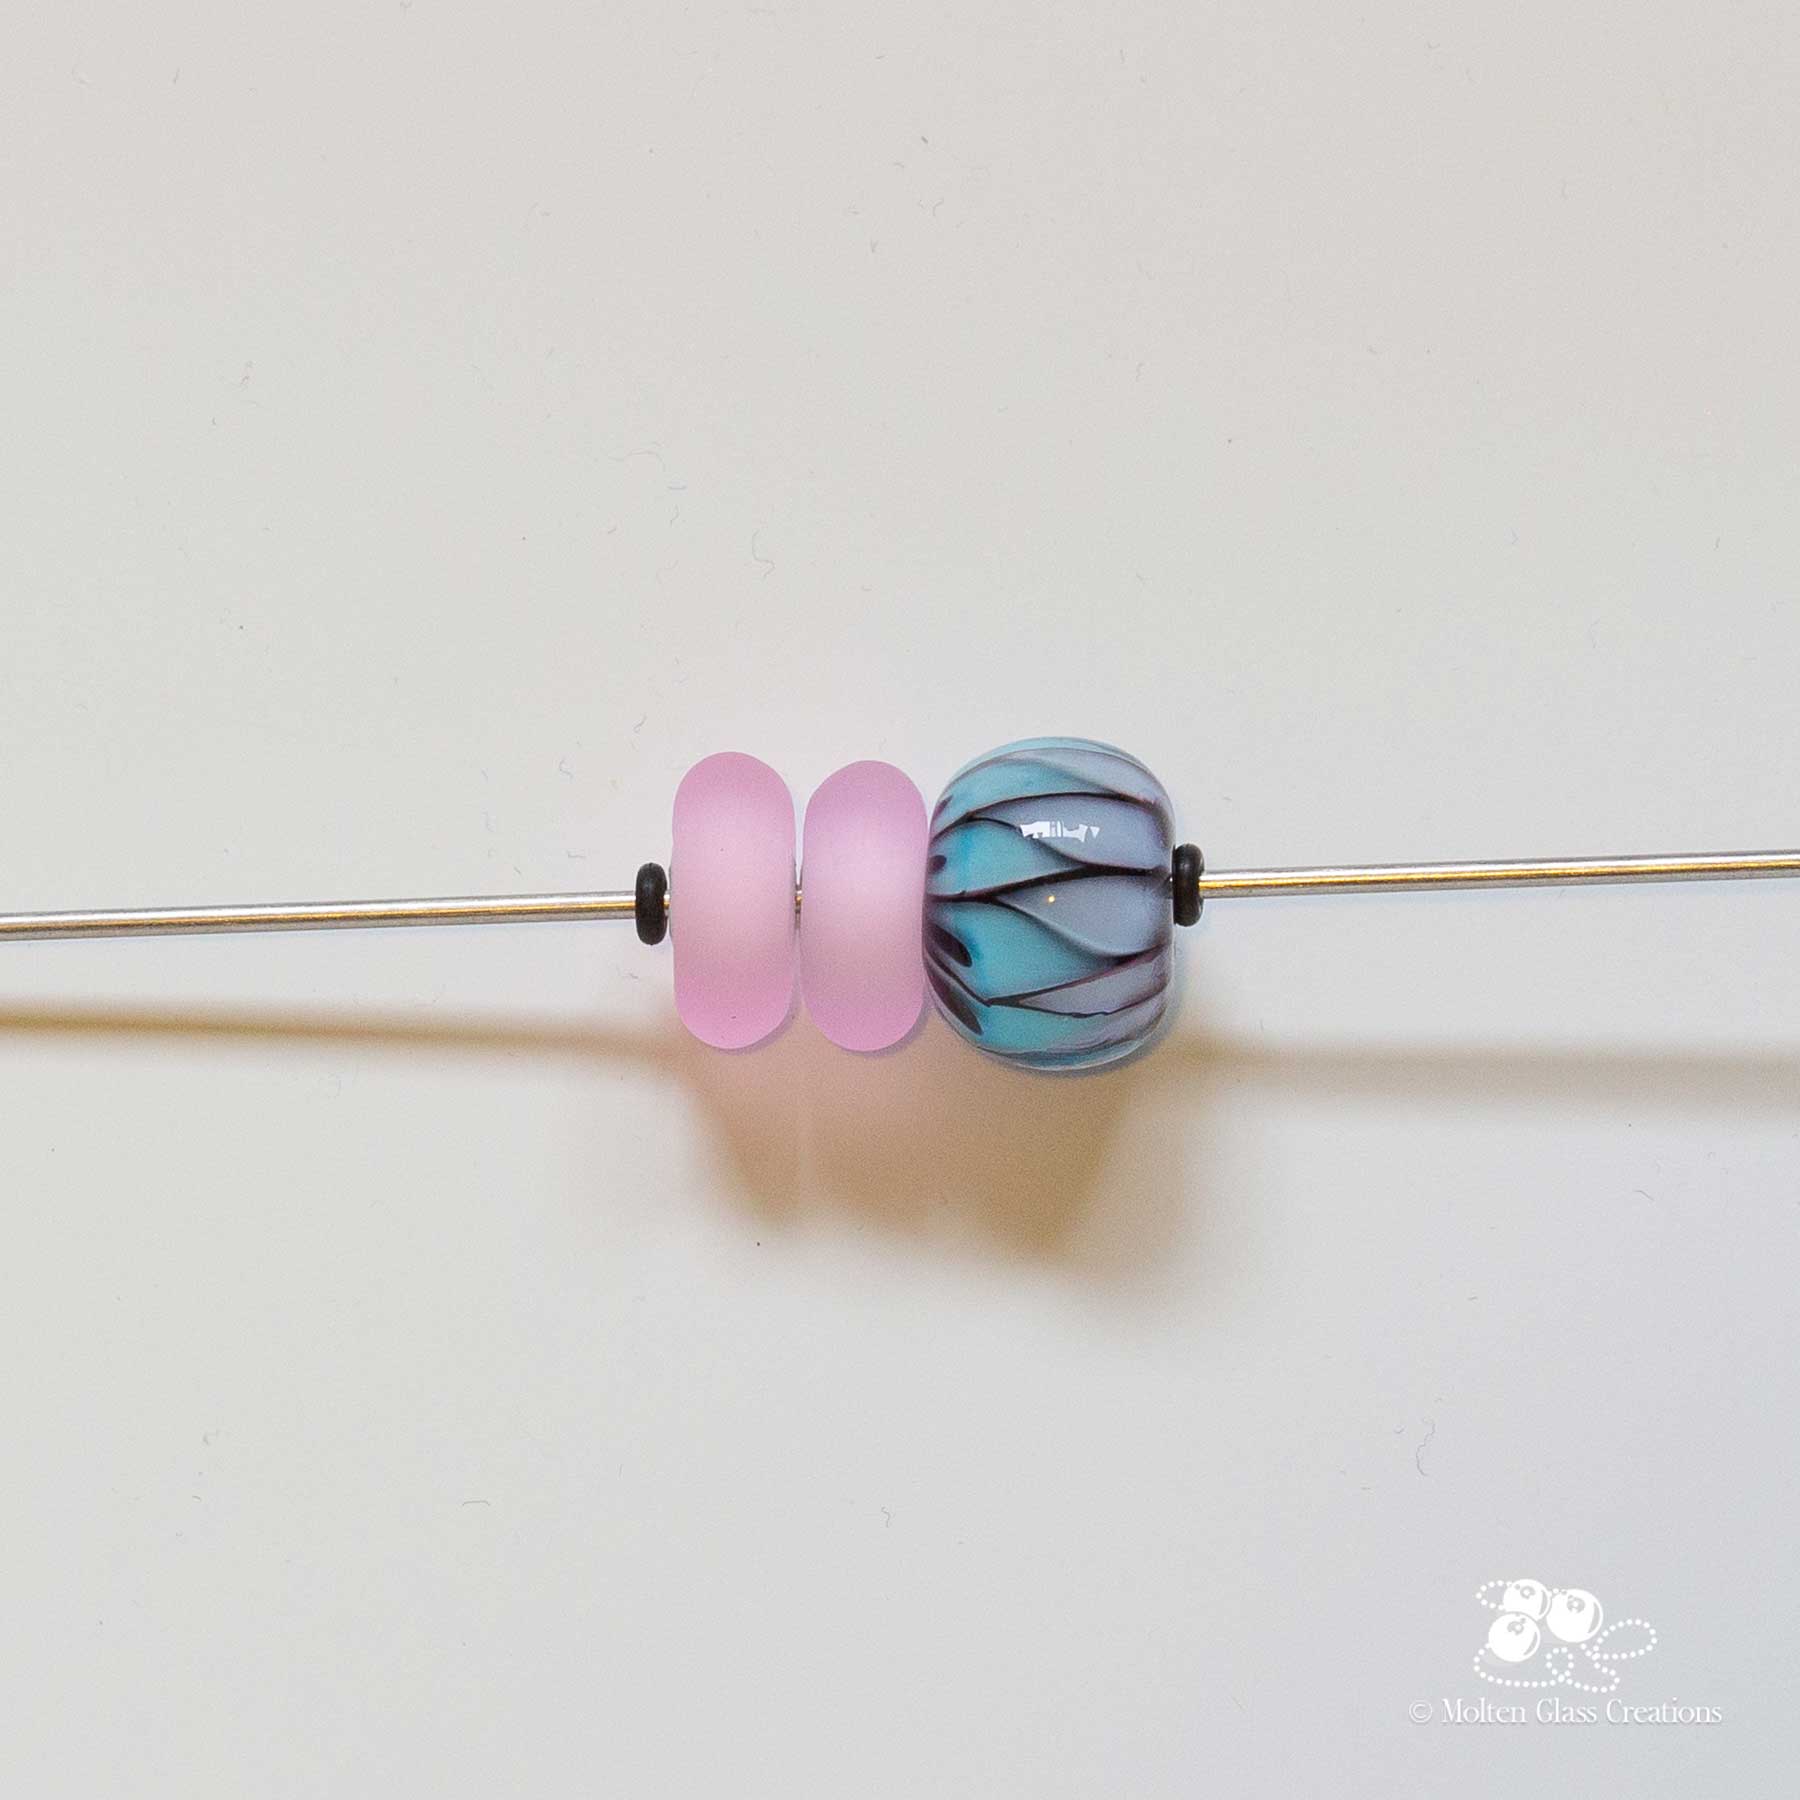 Bead set - Pink & Blue Focal set - Molten Glass Creations